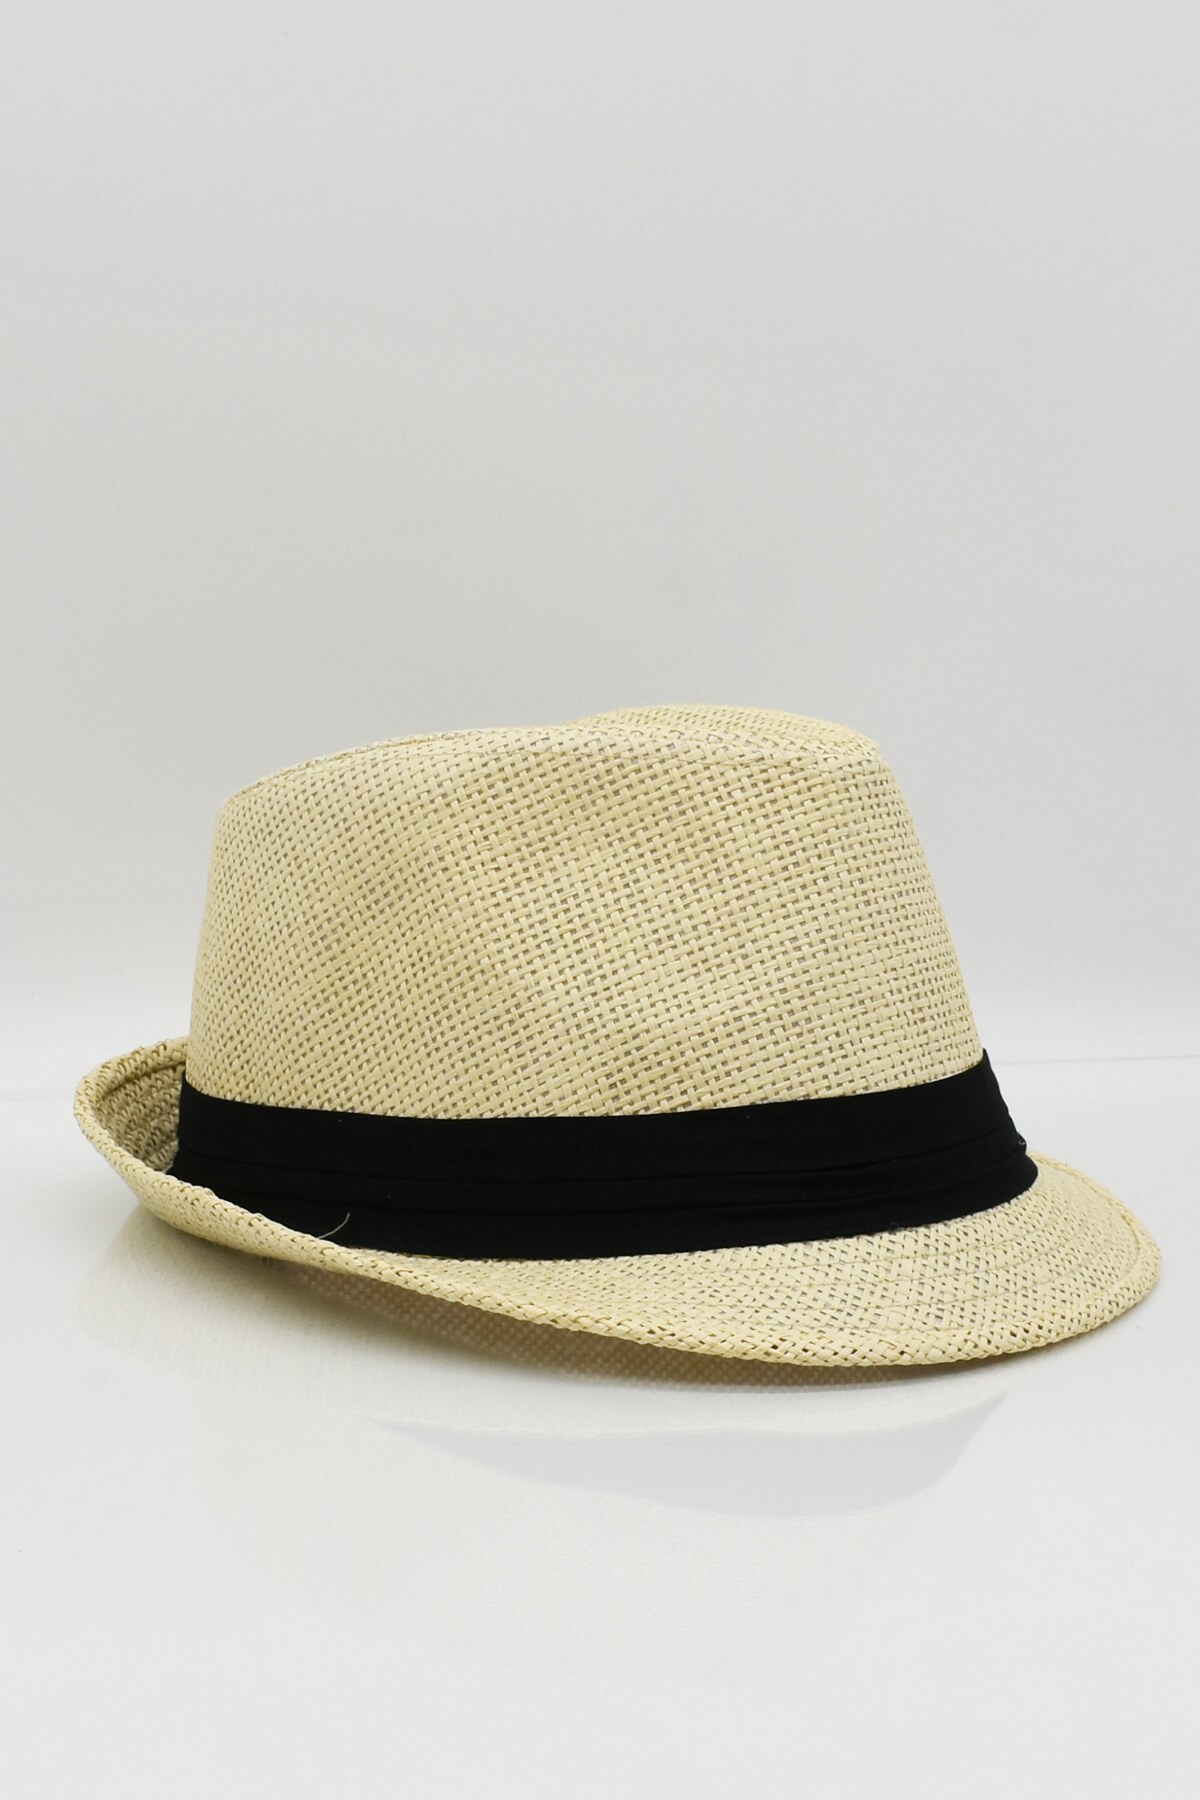 Külah Erkek Fötr Hasır Panama Yazlık Şapka - Bej KLH0770